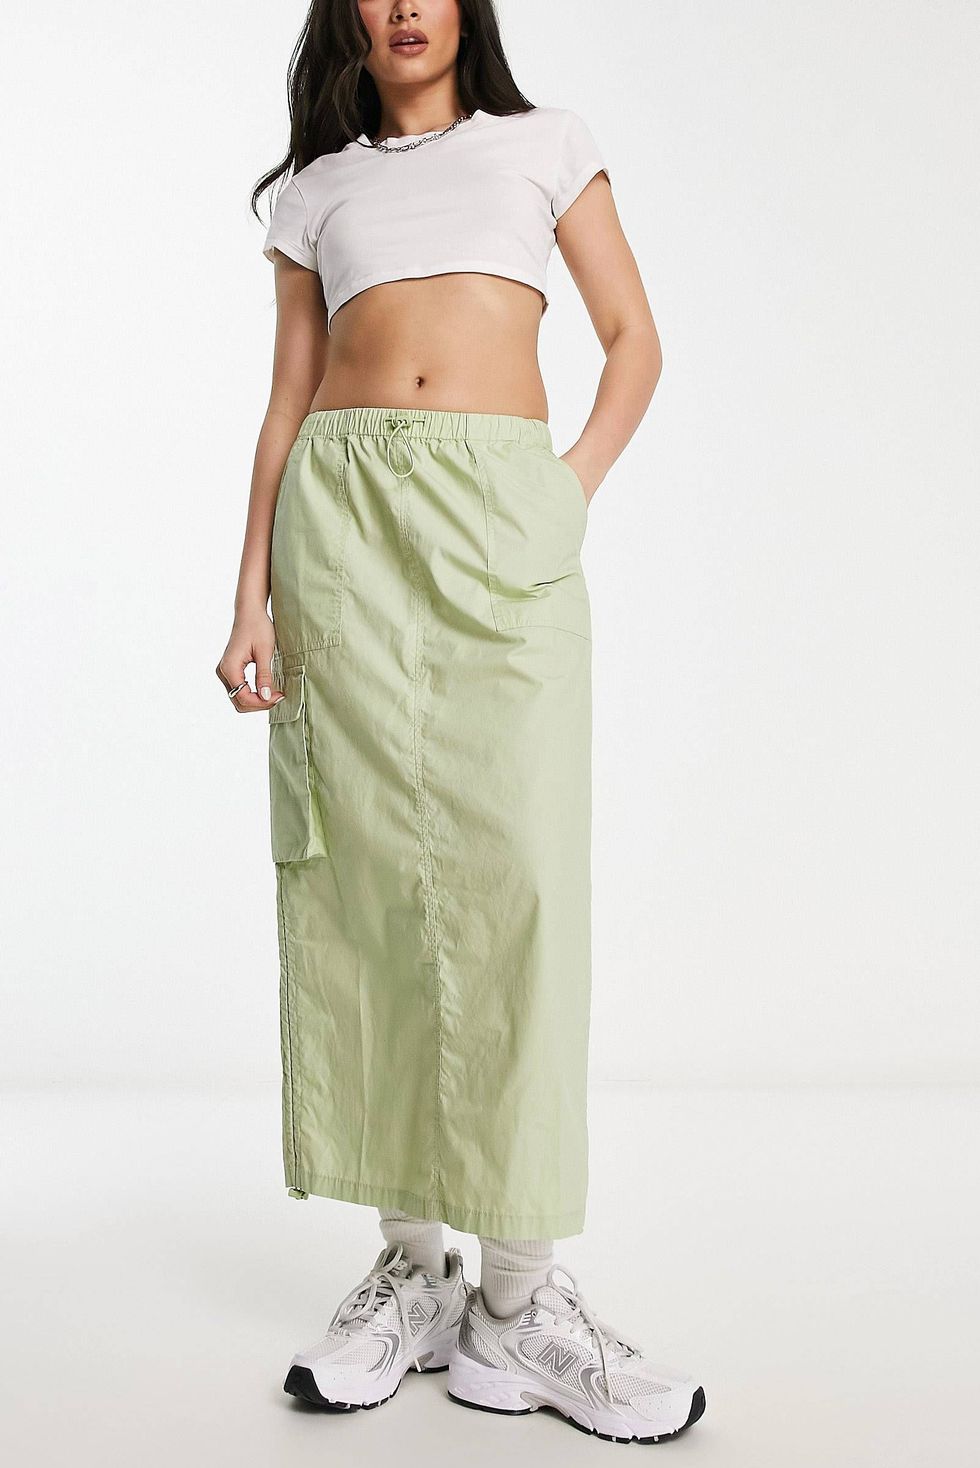 100 Best High waisted maxi skirt ideas